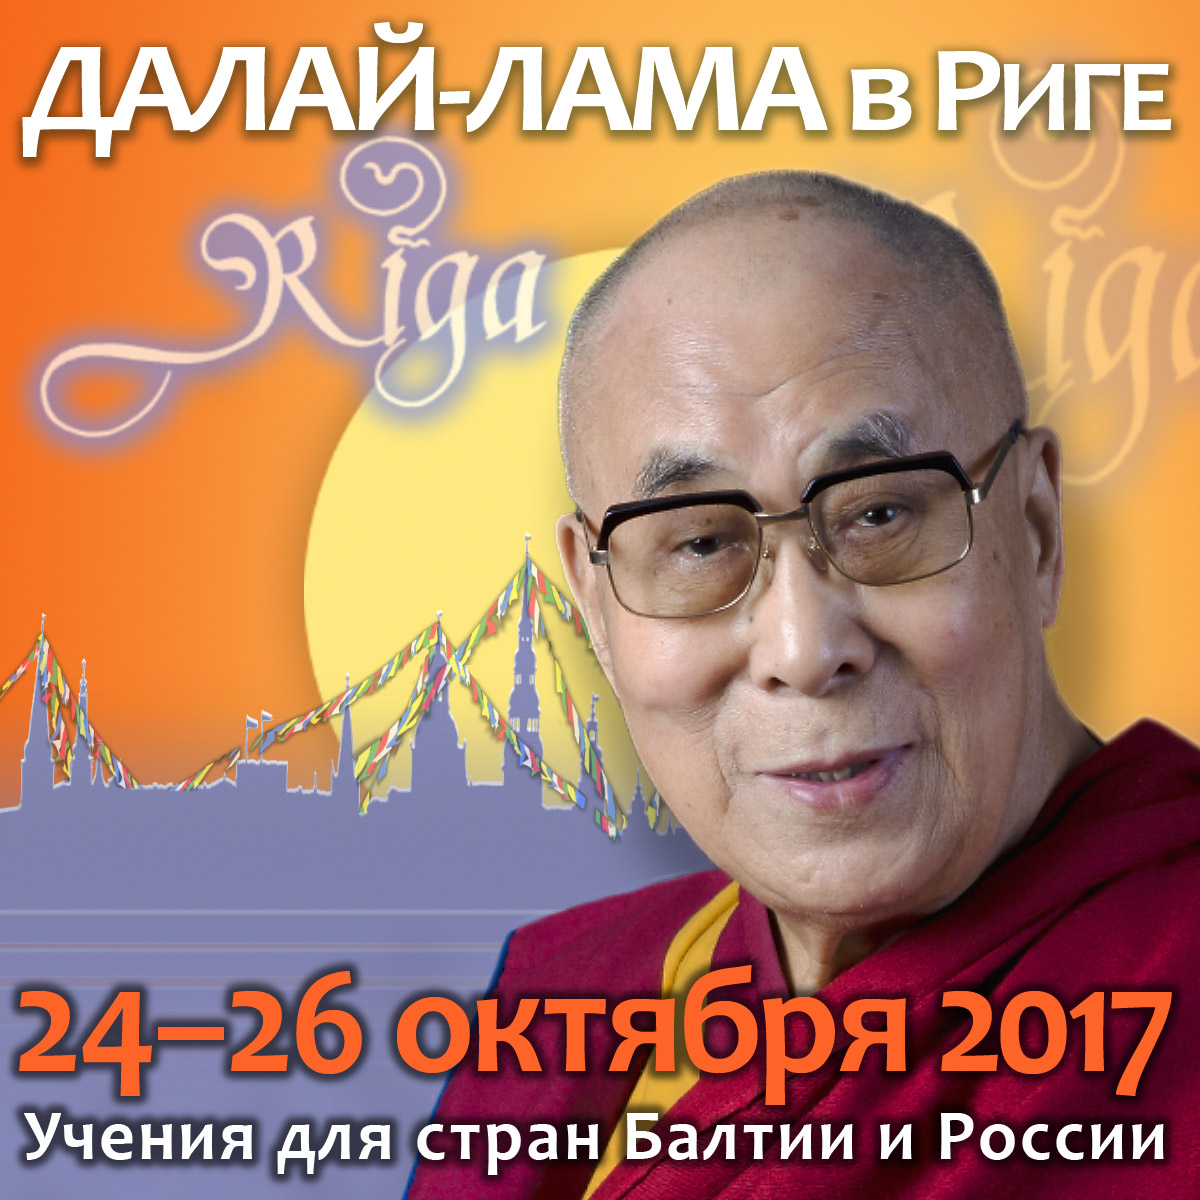 Фото. Рига – 2017. Его Святейшество Далай-лама и волонтеры